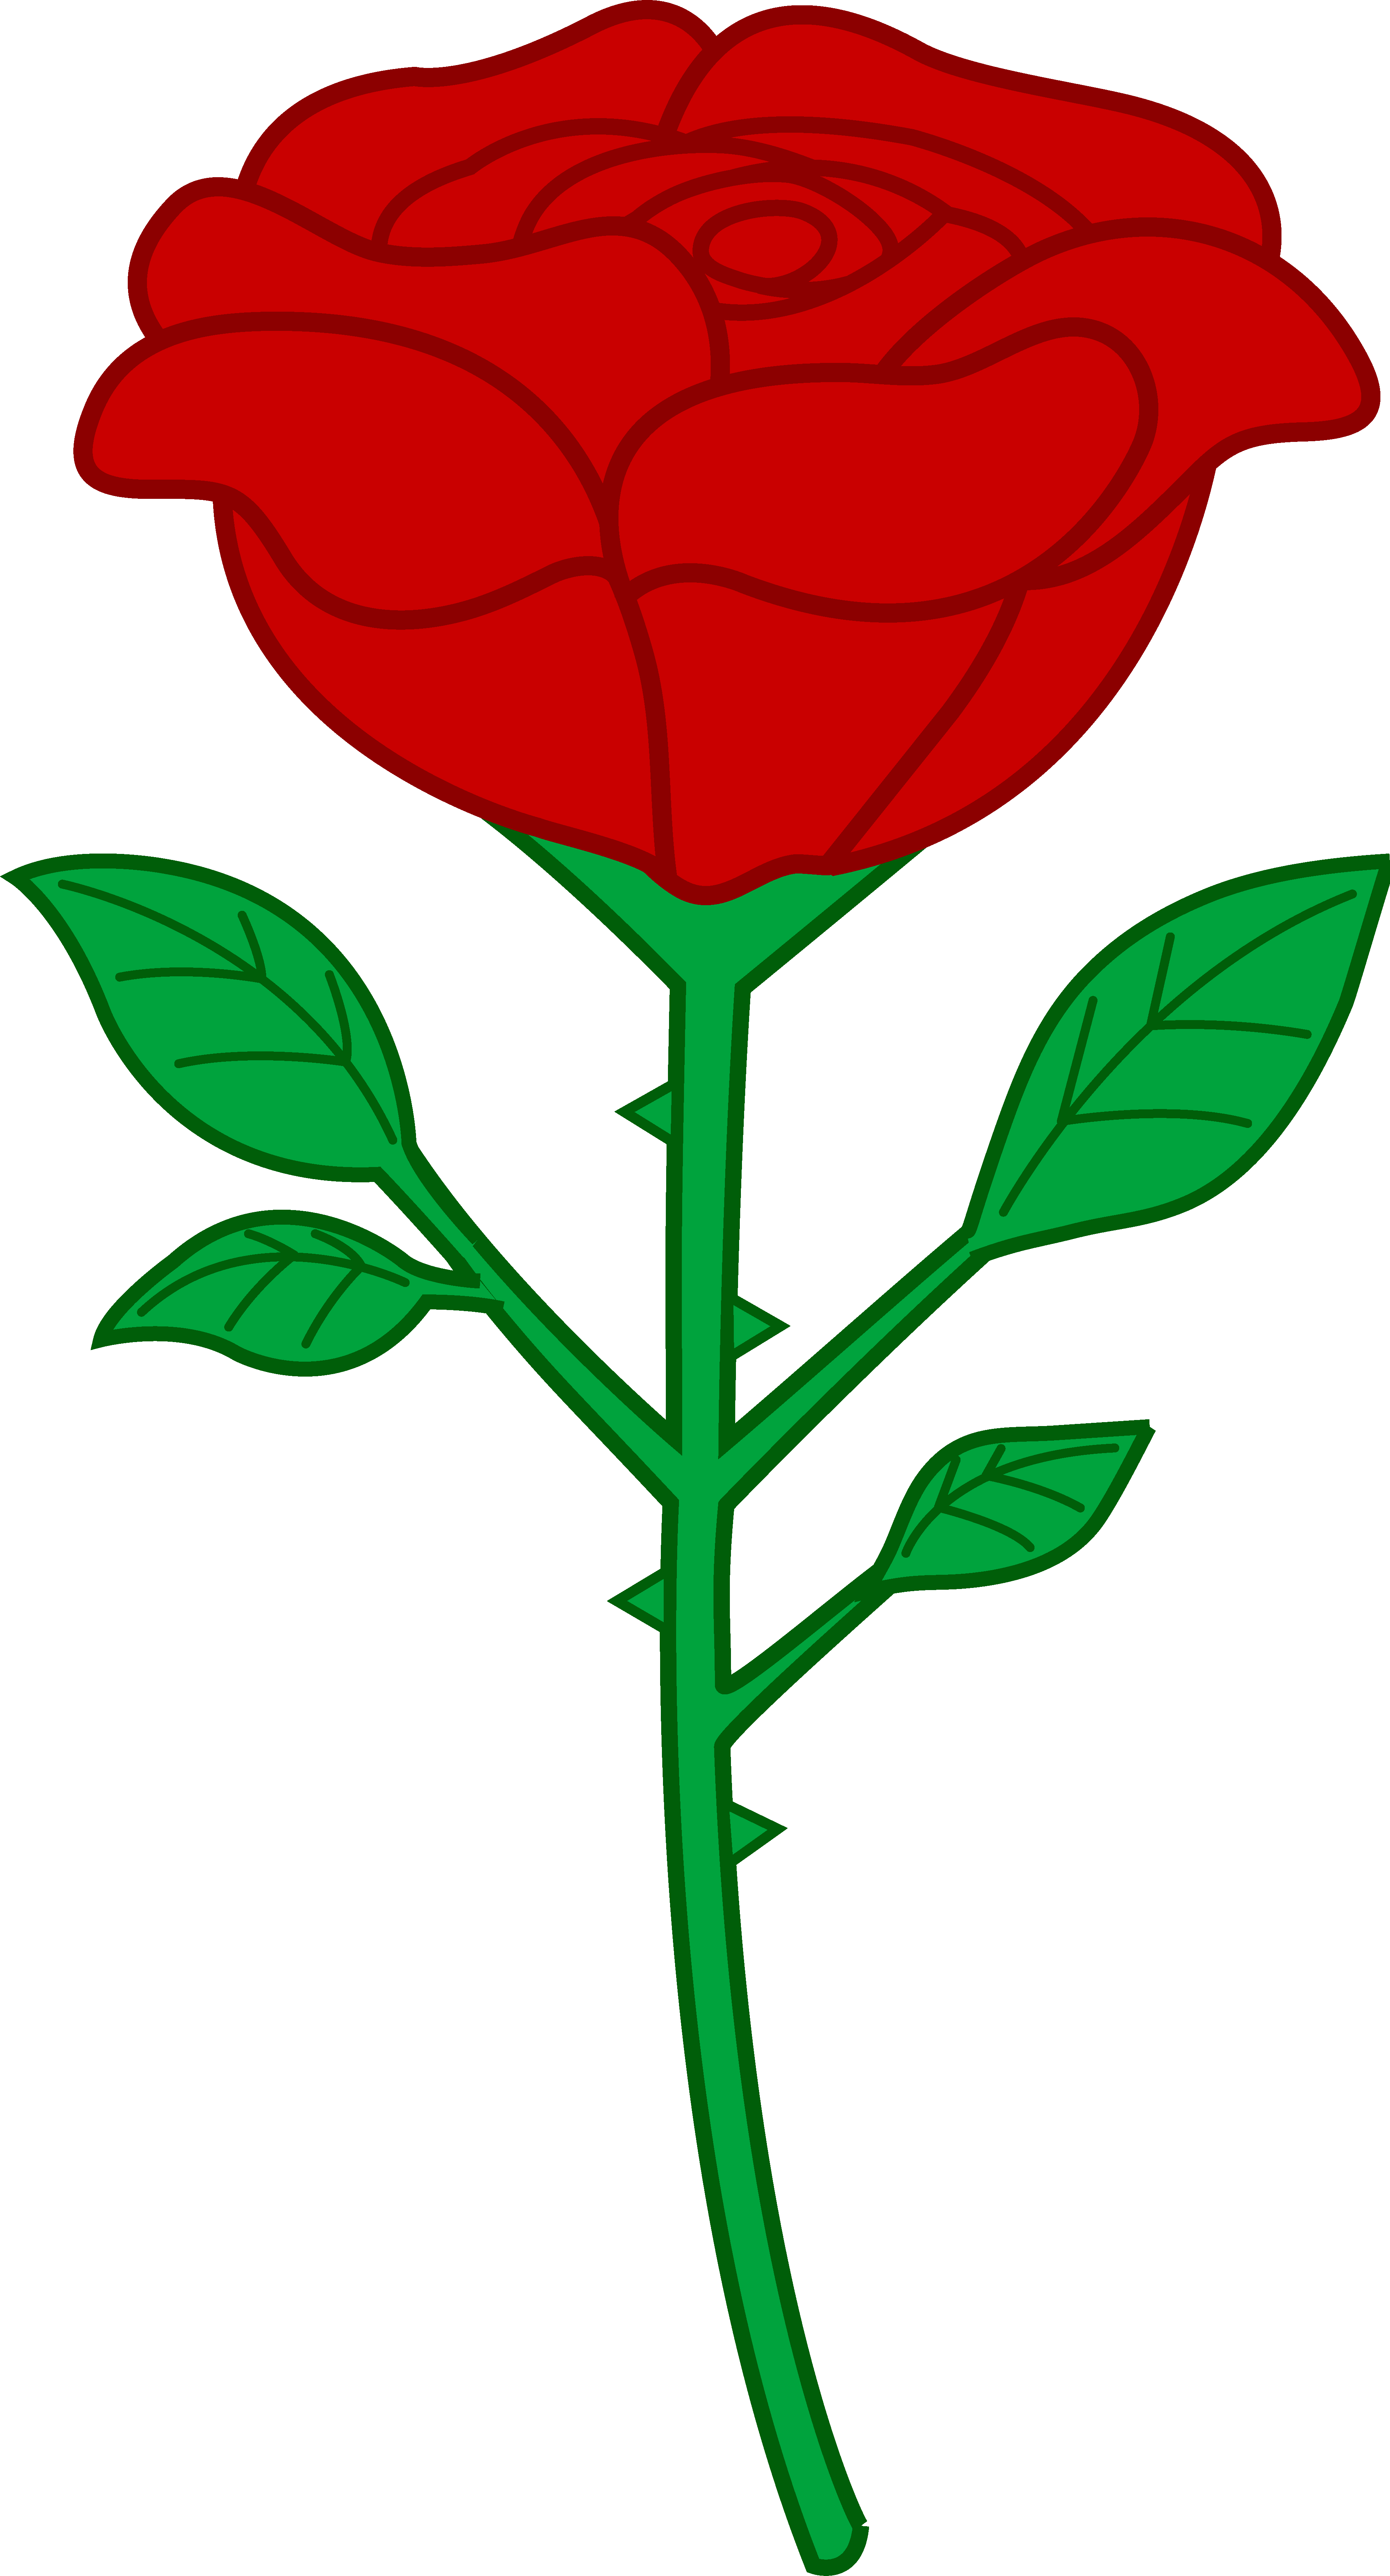 Rose flower clipart